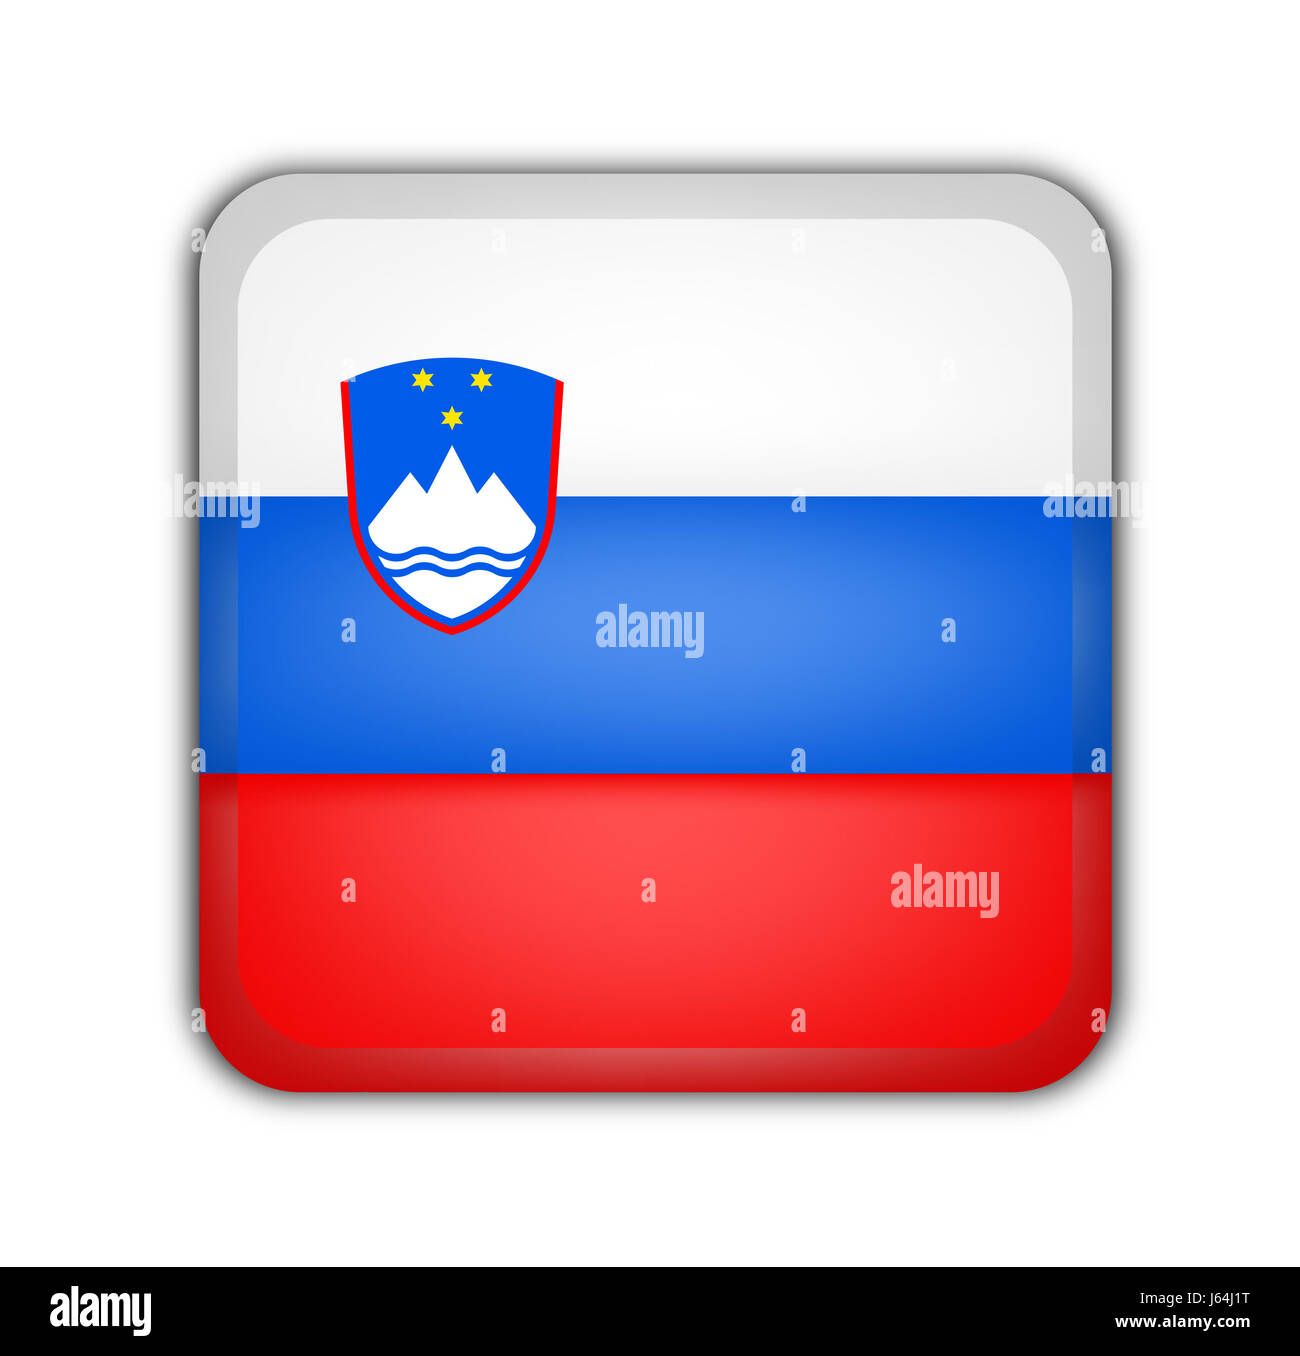 Place de l'Europe de race blanche européenne blanc bouton drapeau Union européenne Slovénie vide bleu Banque D'Images